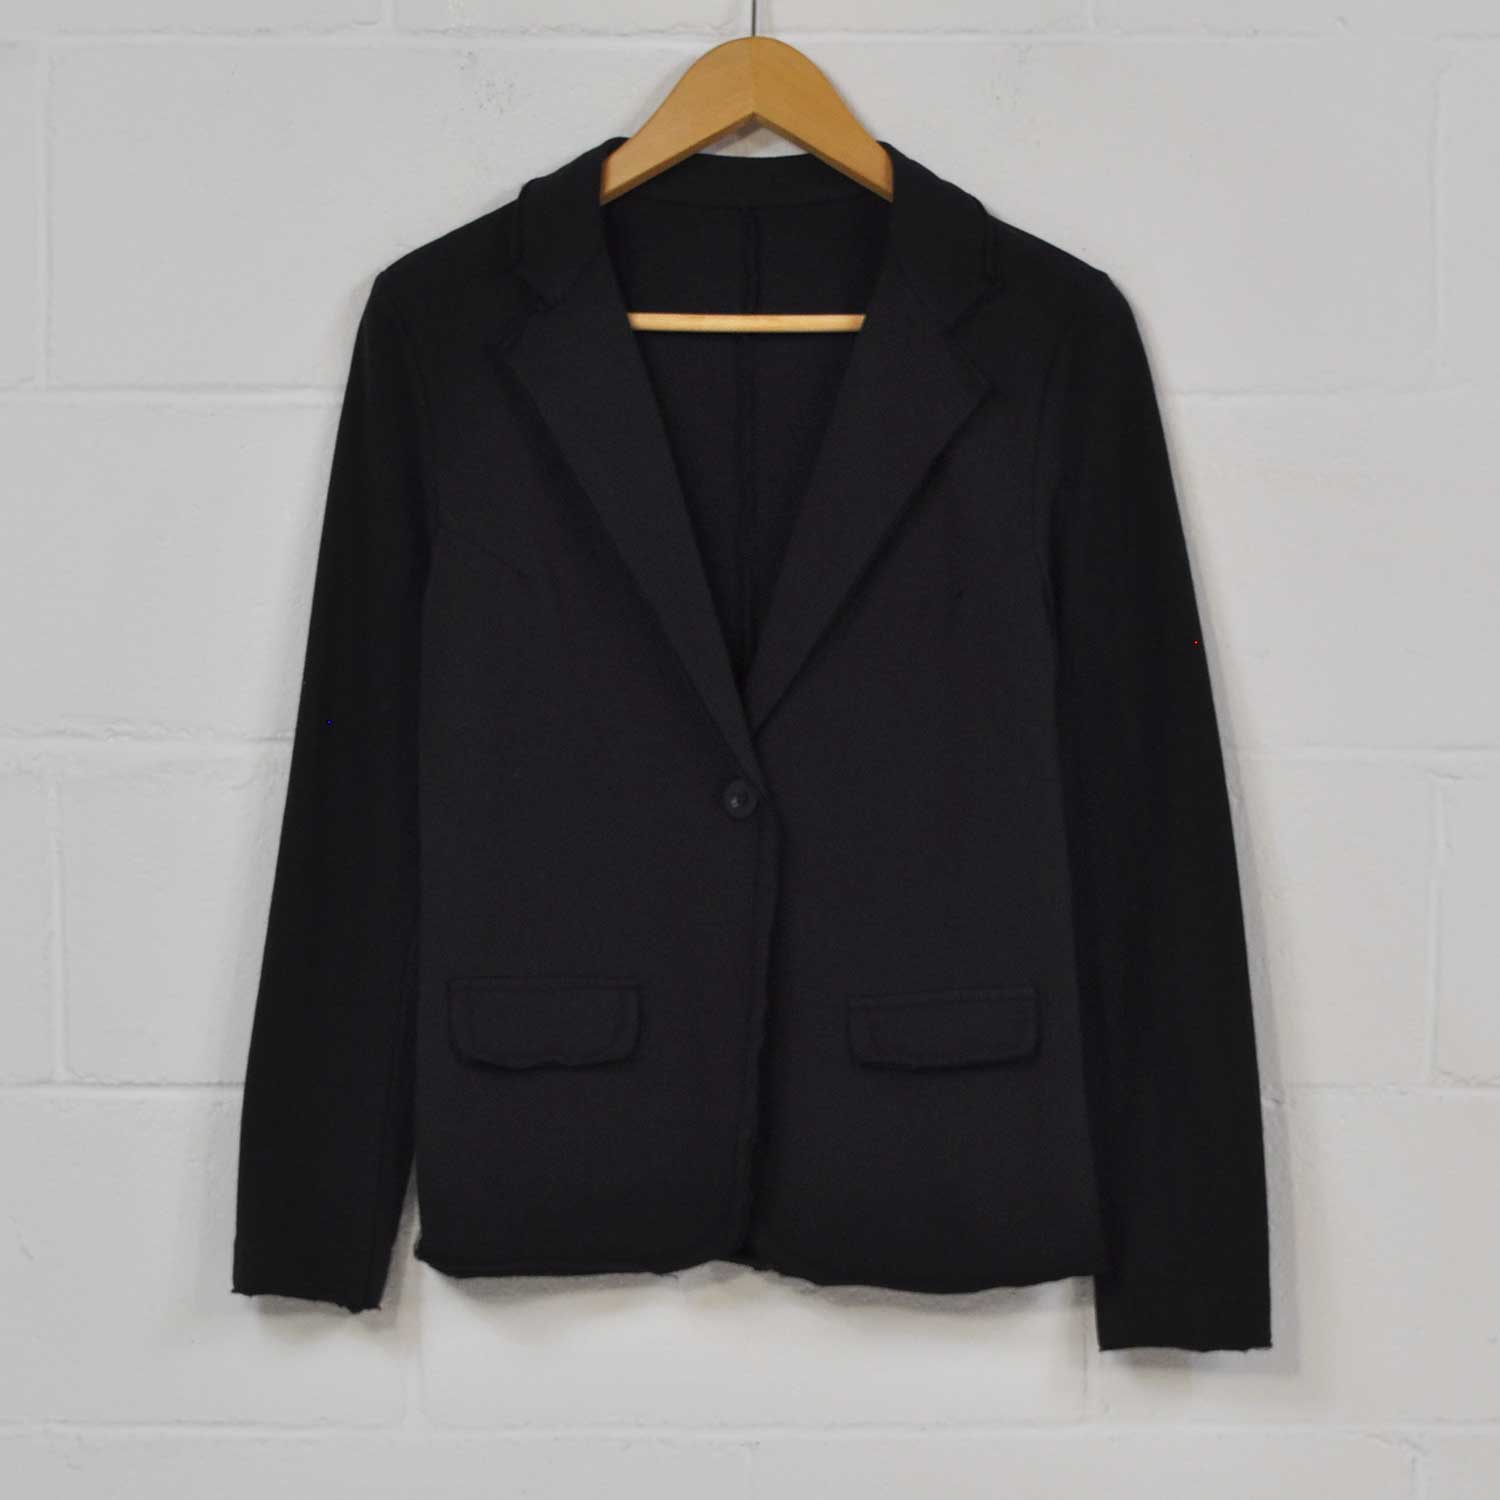 Black cotton suit jacket